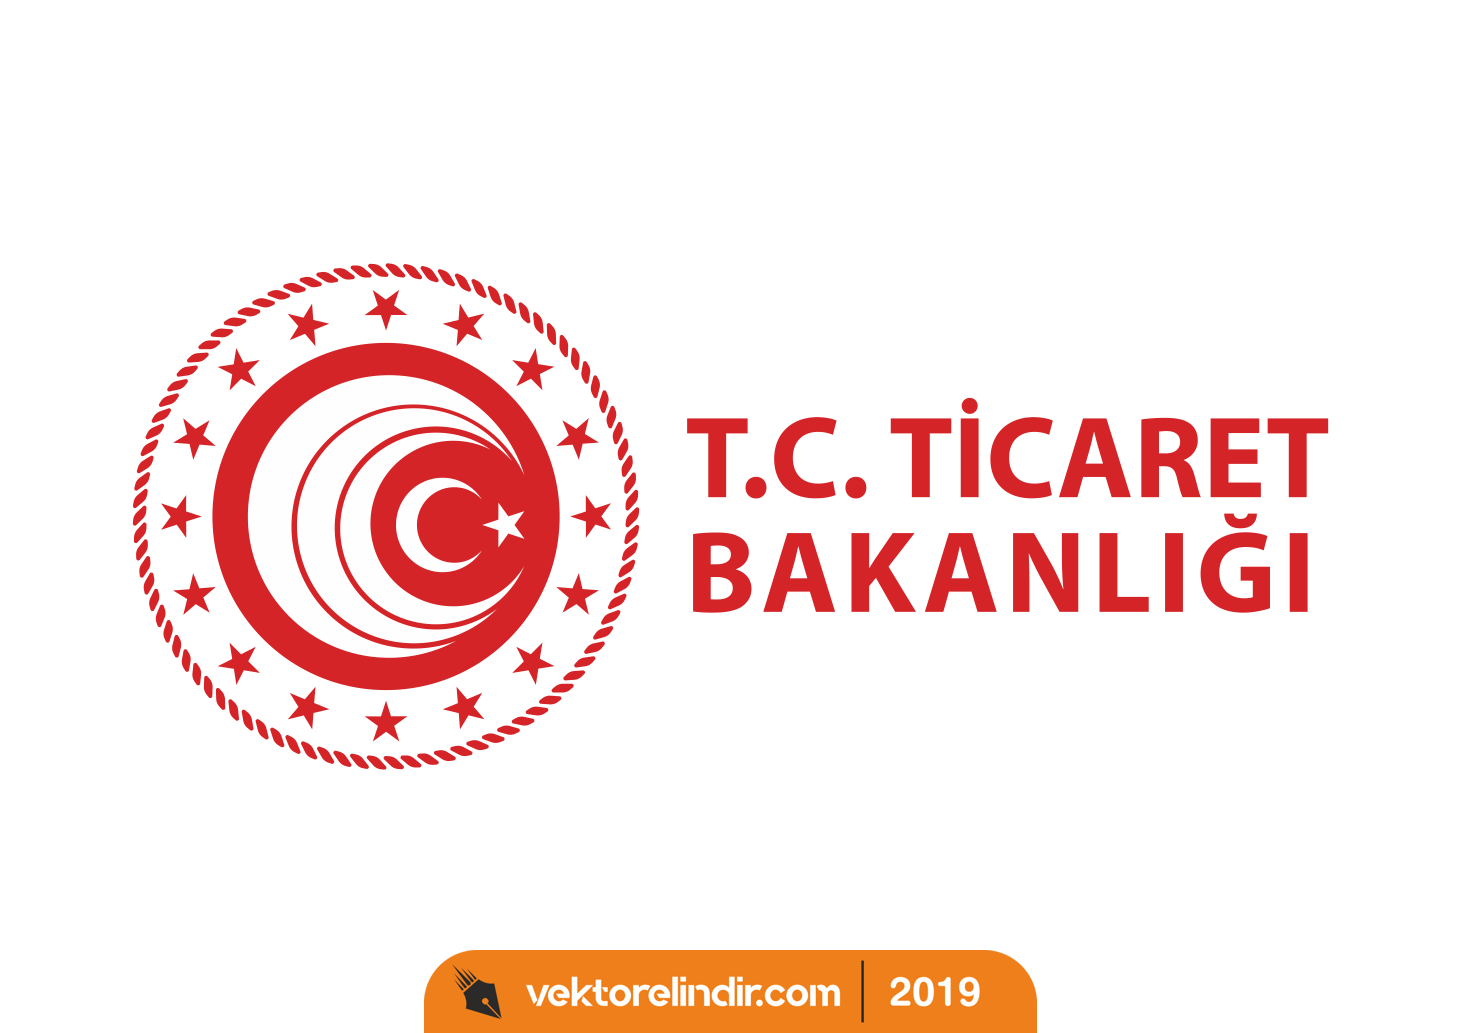 Tc Ticaret Bakanlığı Yeni Logo_Yatay